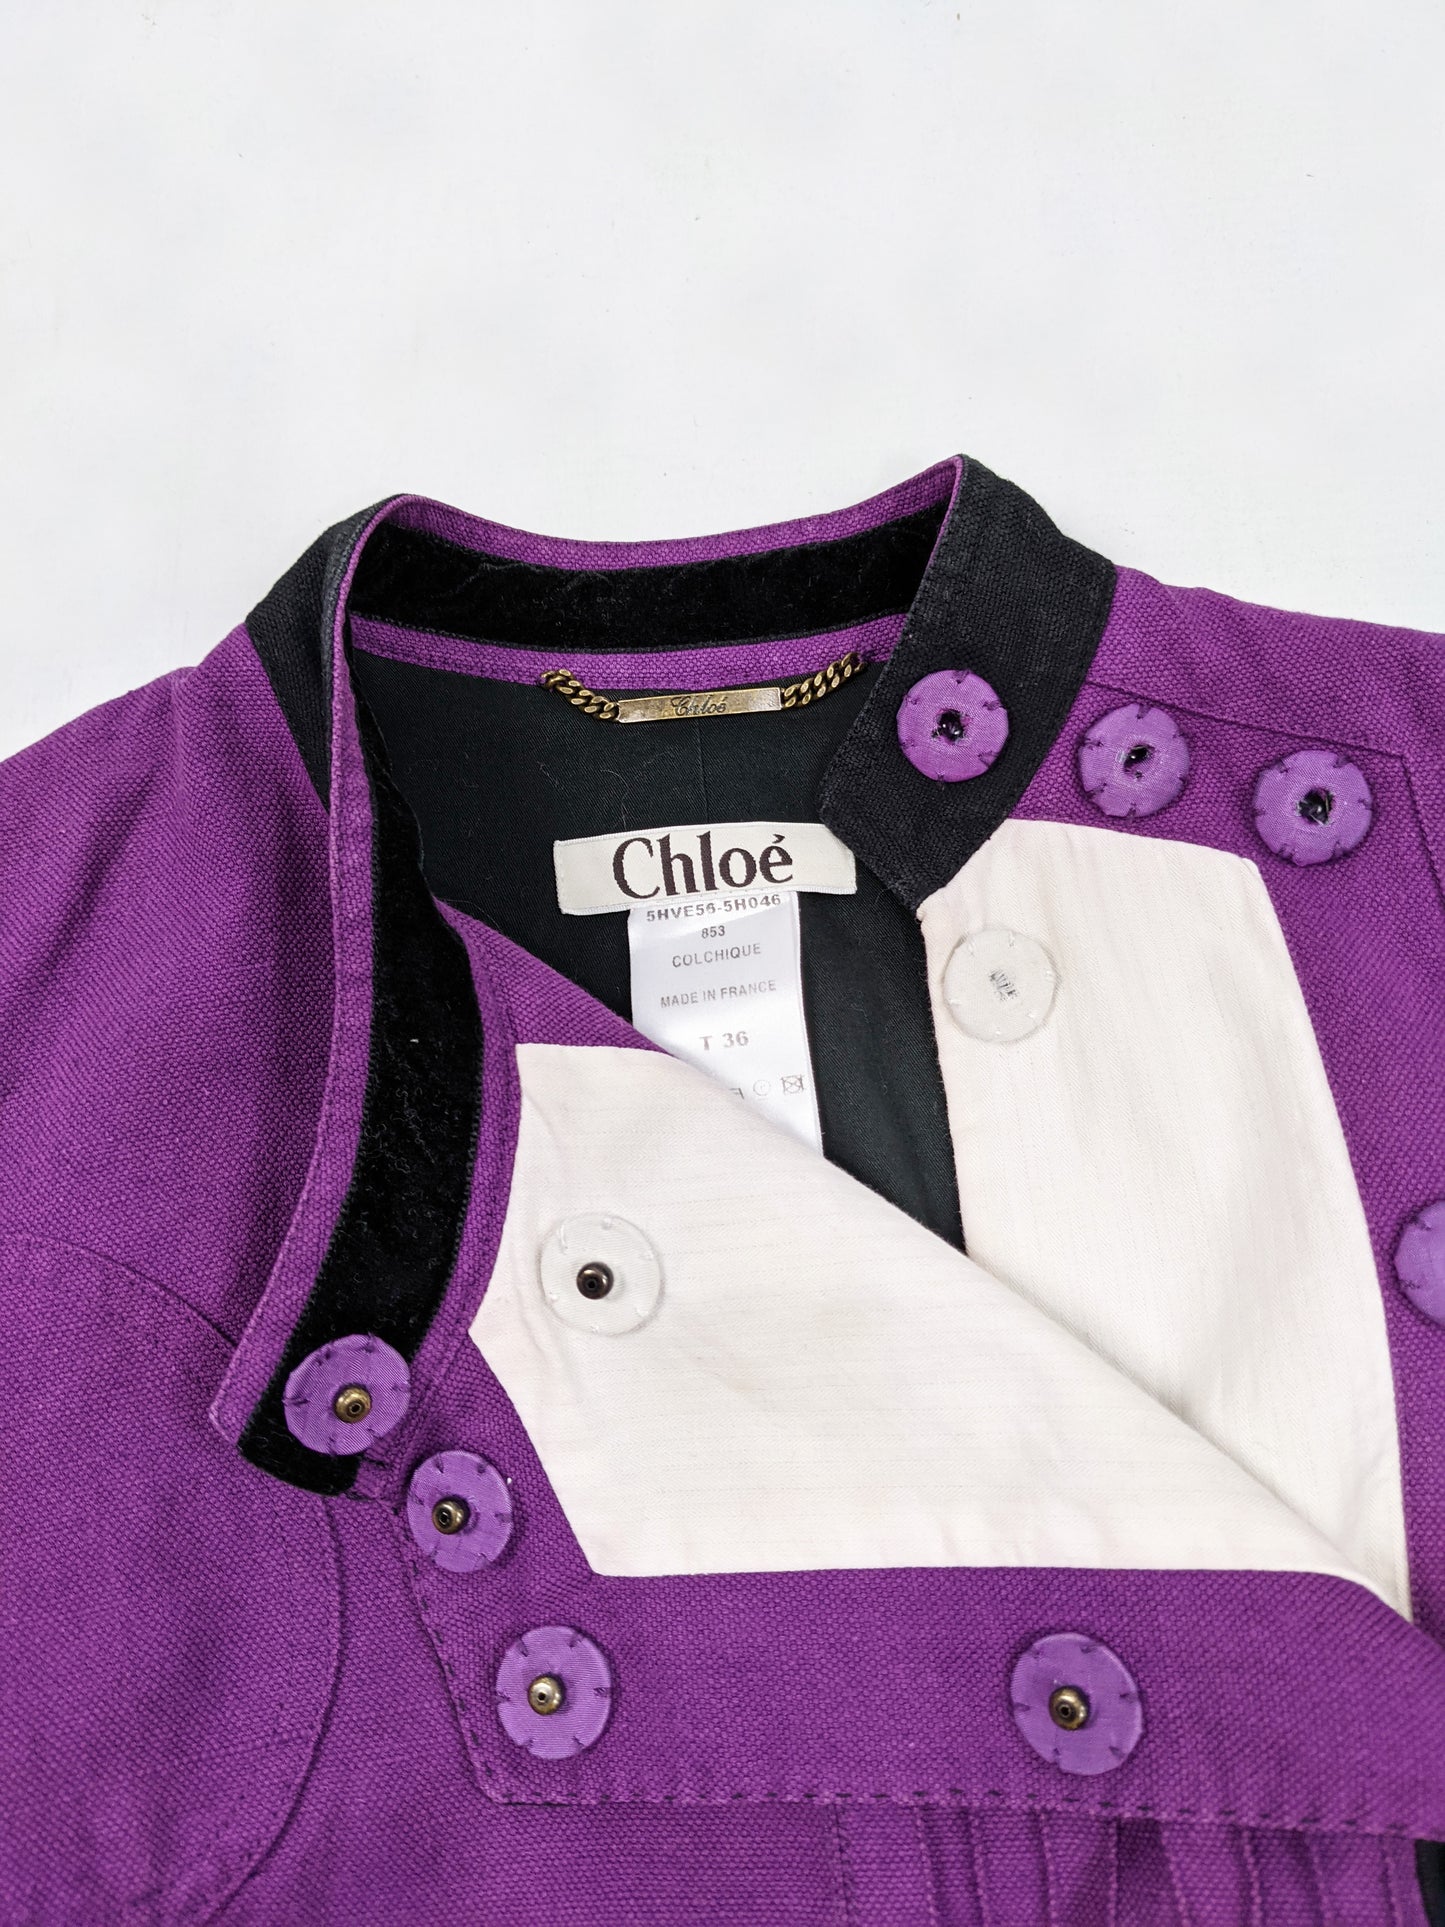 Purple Linen & Velvet  Womens Jacket, A/W 2005